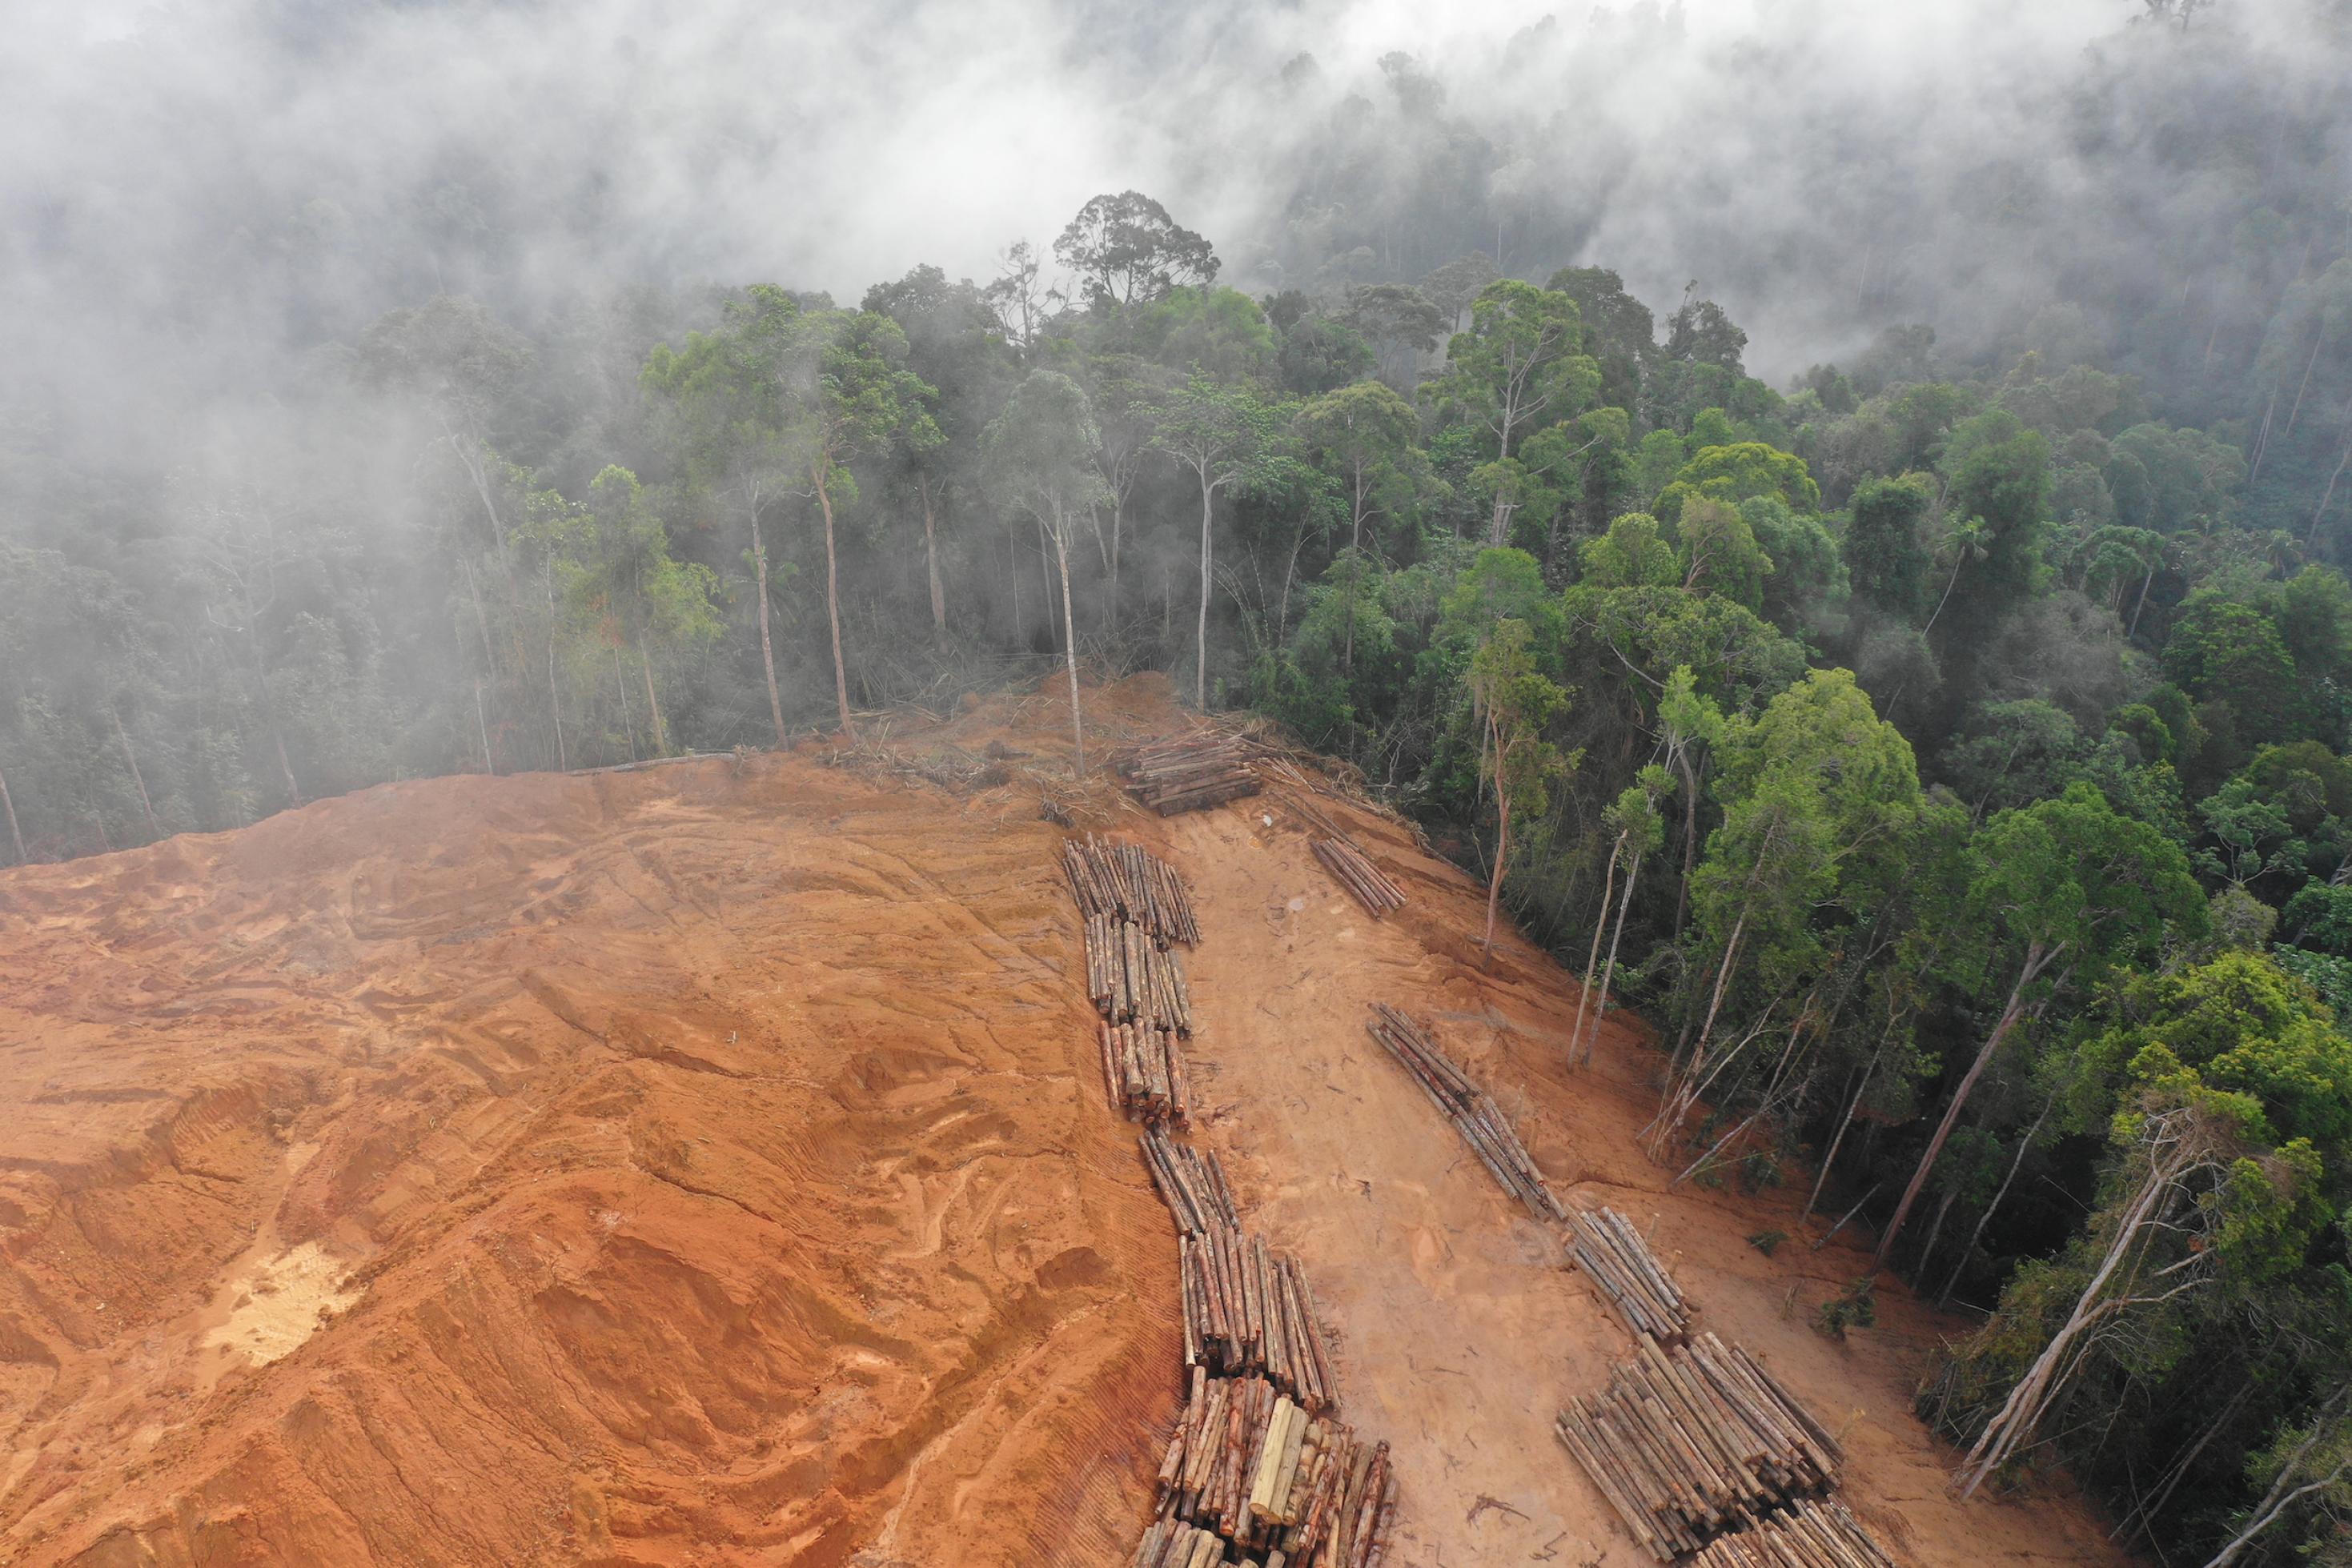 Luftfoto einer Rodungsschneise im Regenwald in Malaysia. Holz ist gestapelt, eine Wunde klafft im Wald.